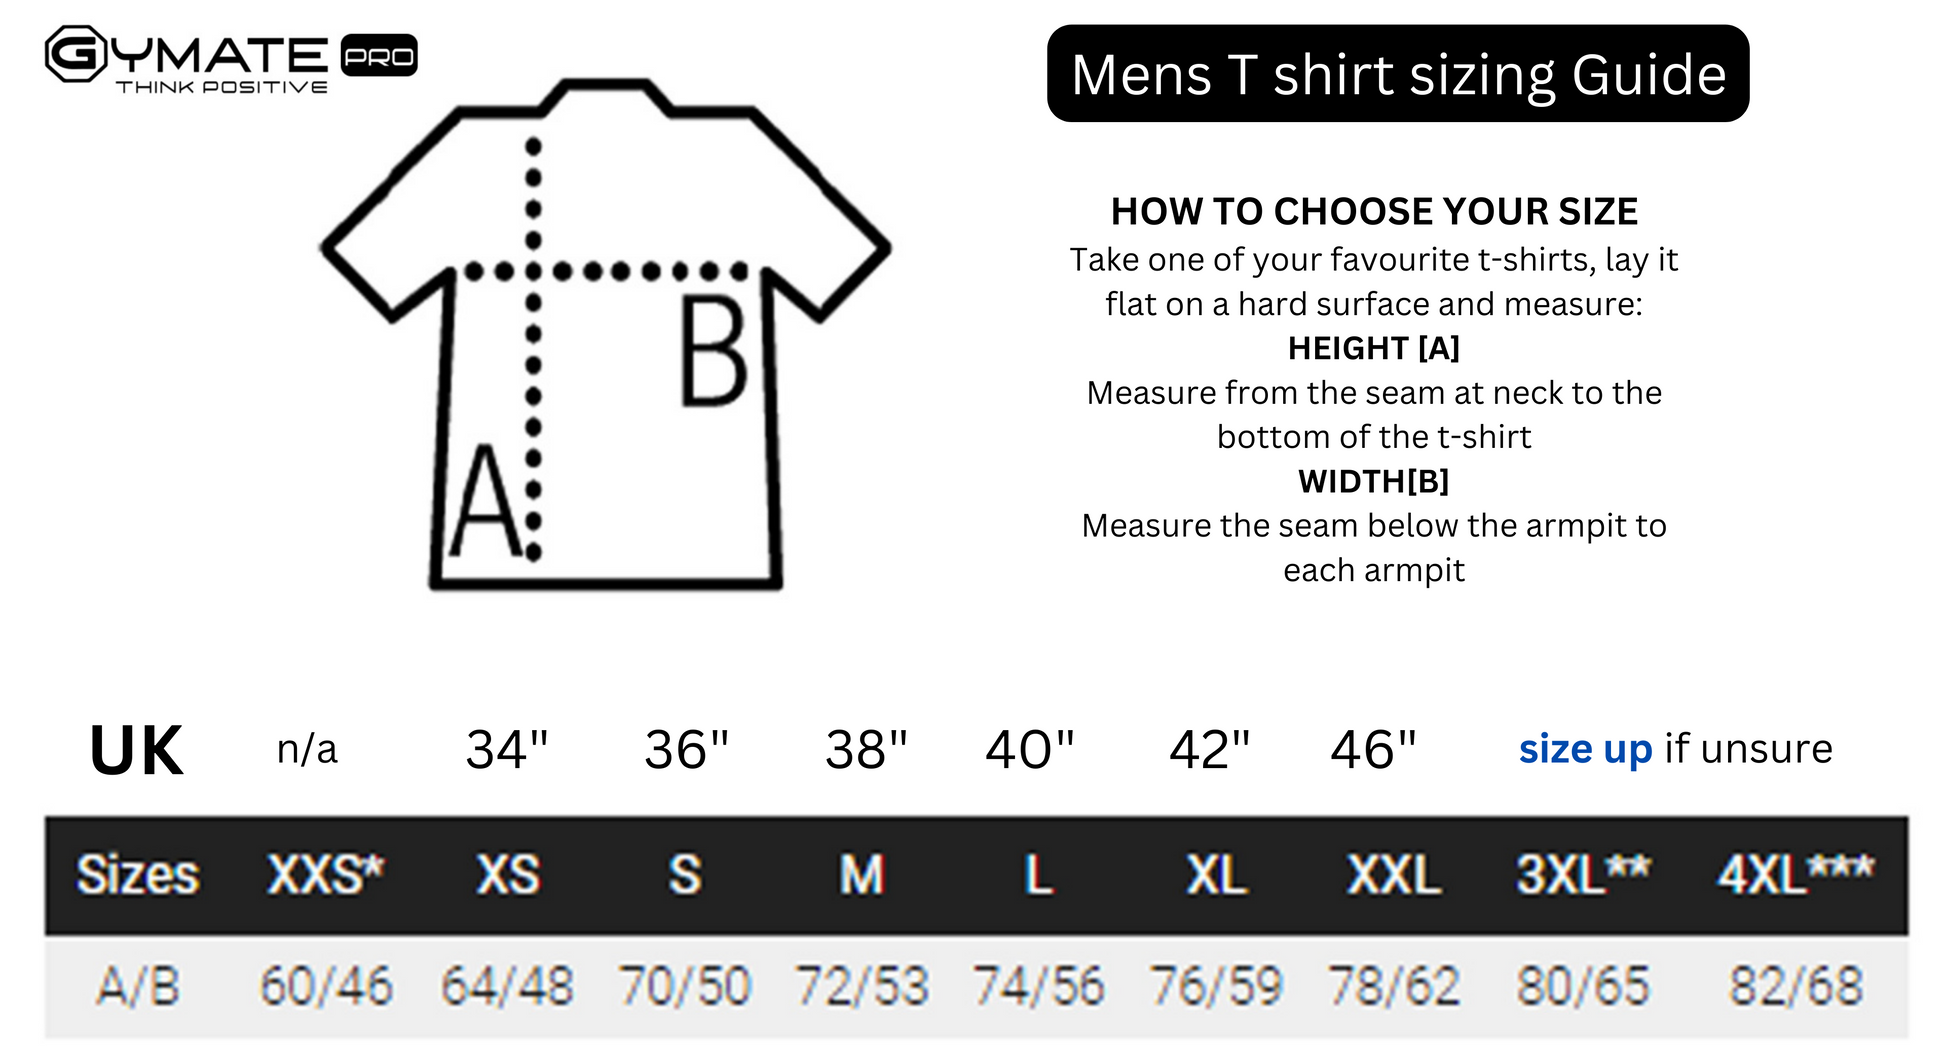 Stylish mens T shirts Active / Leisure Wear | Gymate small G logo size chart